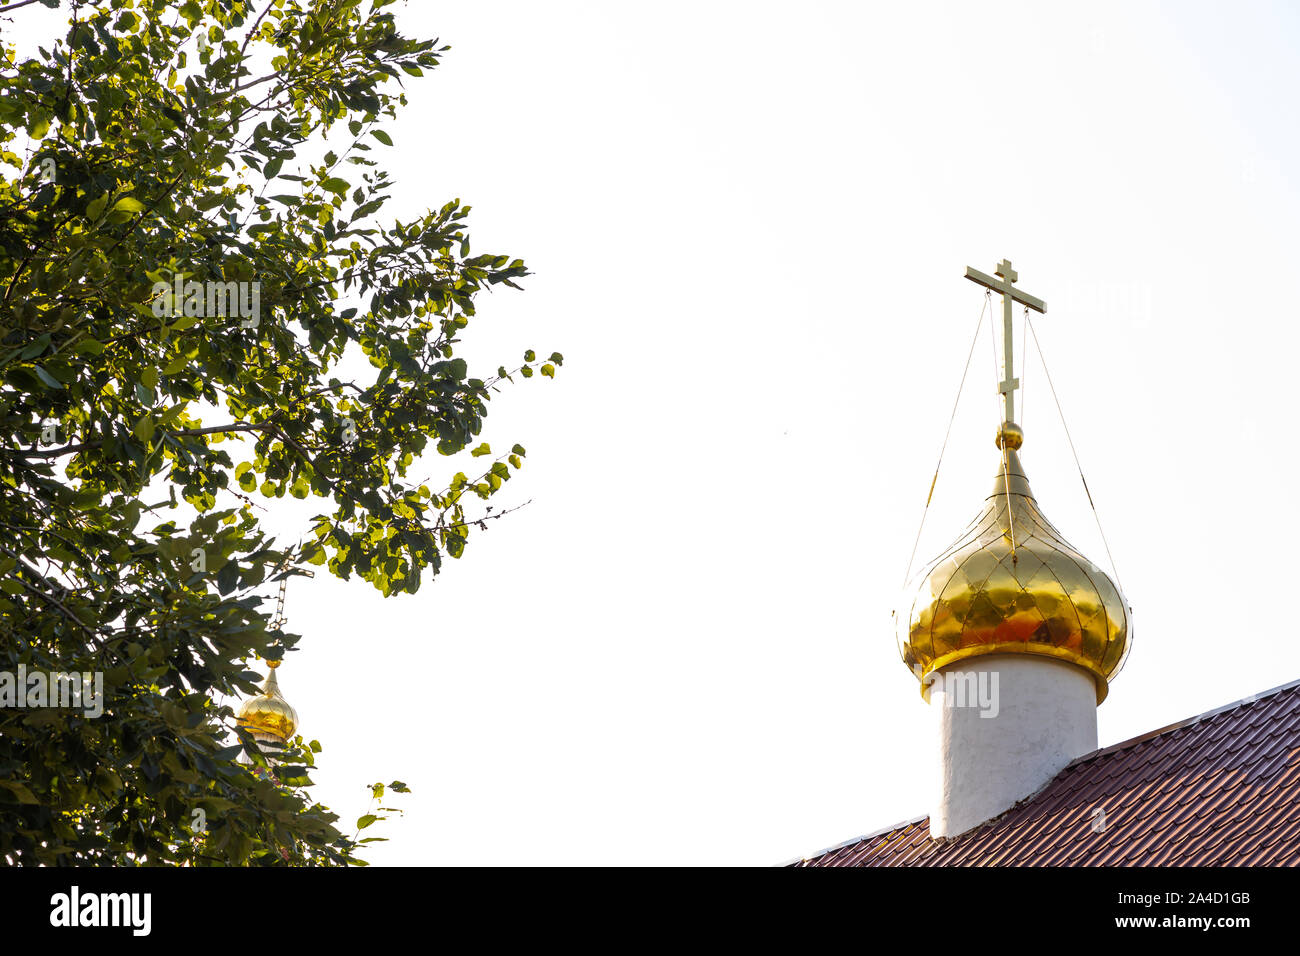 Ansicht Von Unten Auf Das Glanzende Christliche Kirche Dome Mit Kreuz Auf Rotem Dach Gegen Baum Und Weissen Himmel Stockfotografie Alamy